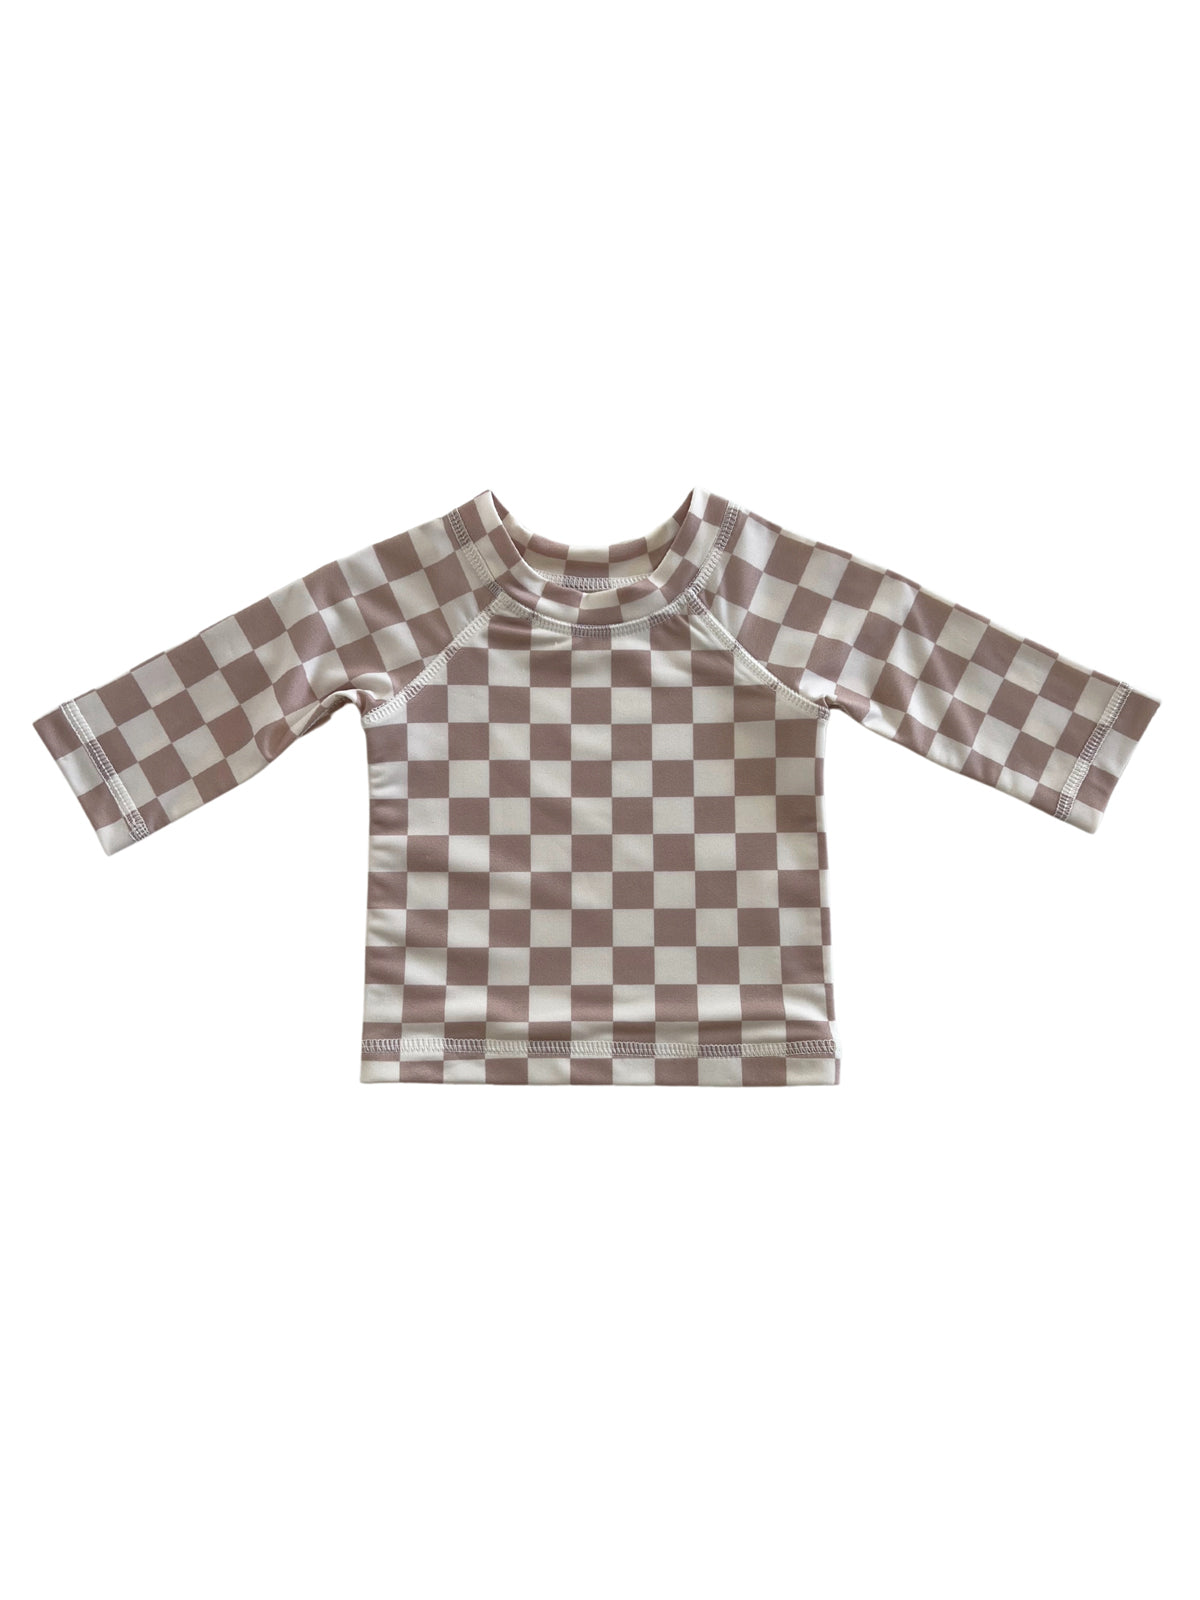 Tiramisu Checkerboard / Maui Rashguard / UPF 50+